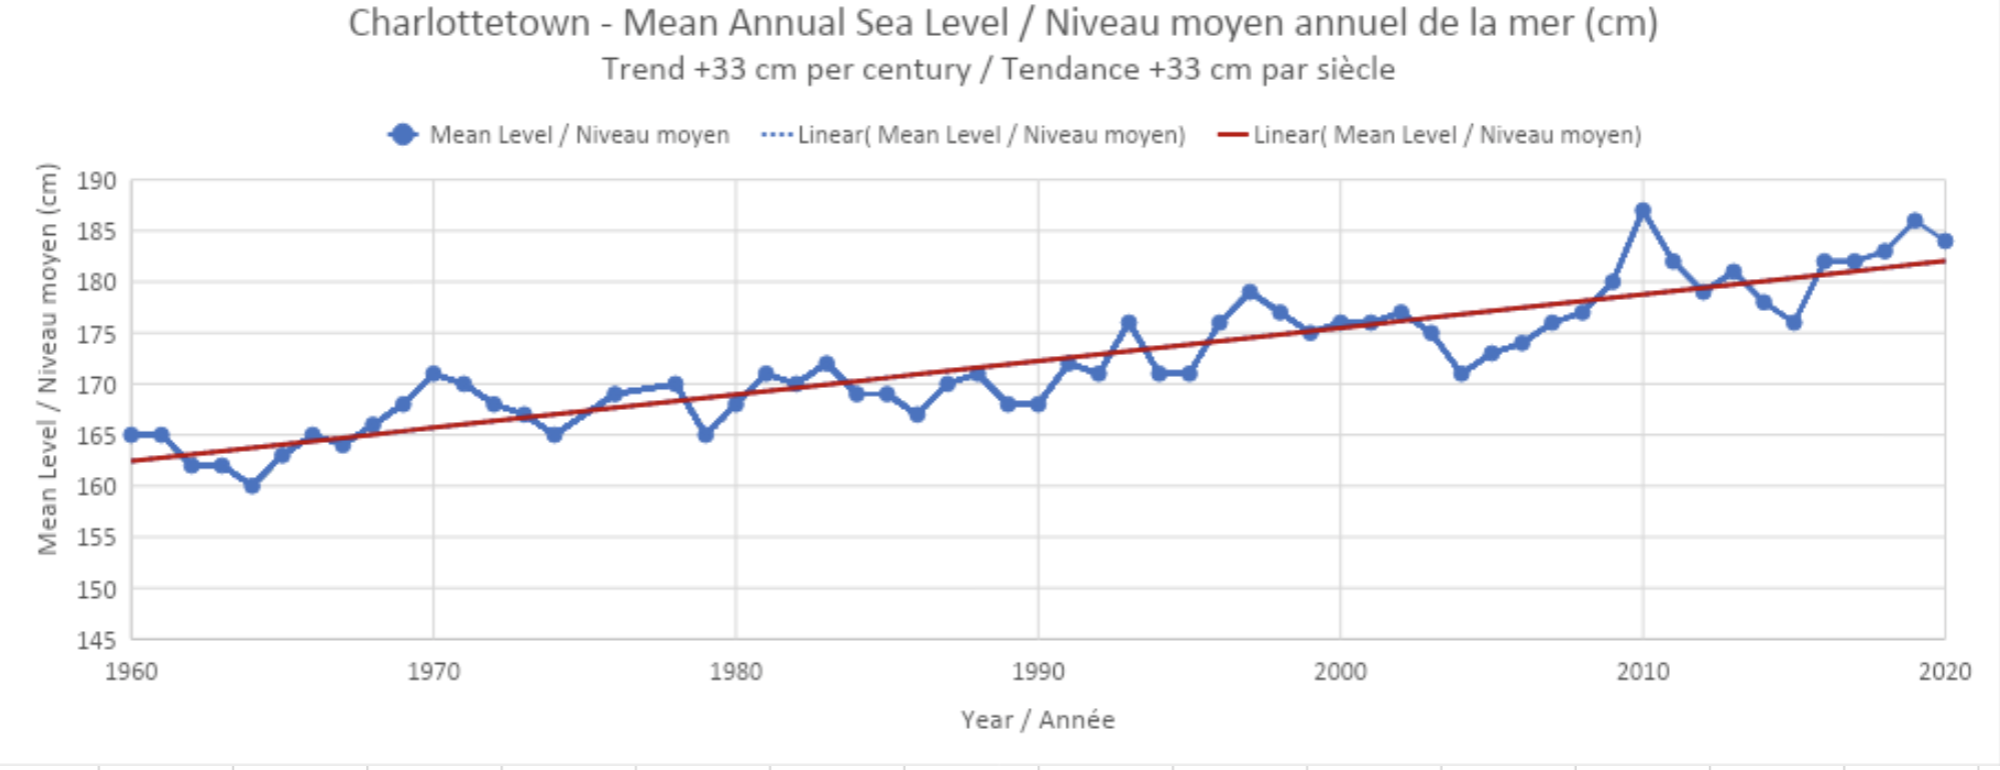 Un graphique titré "Charlottetown PEI - Niveau moyen annuel de la mer, Tendance +33 cm par siècle". Le graphique montre les années 1961-2021 et présente une tendance à la hausse.